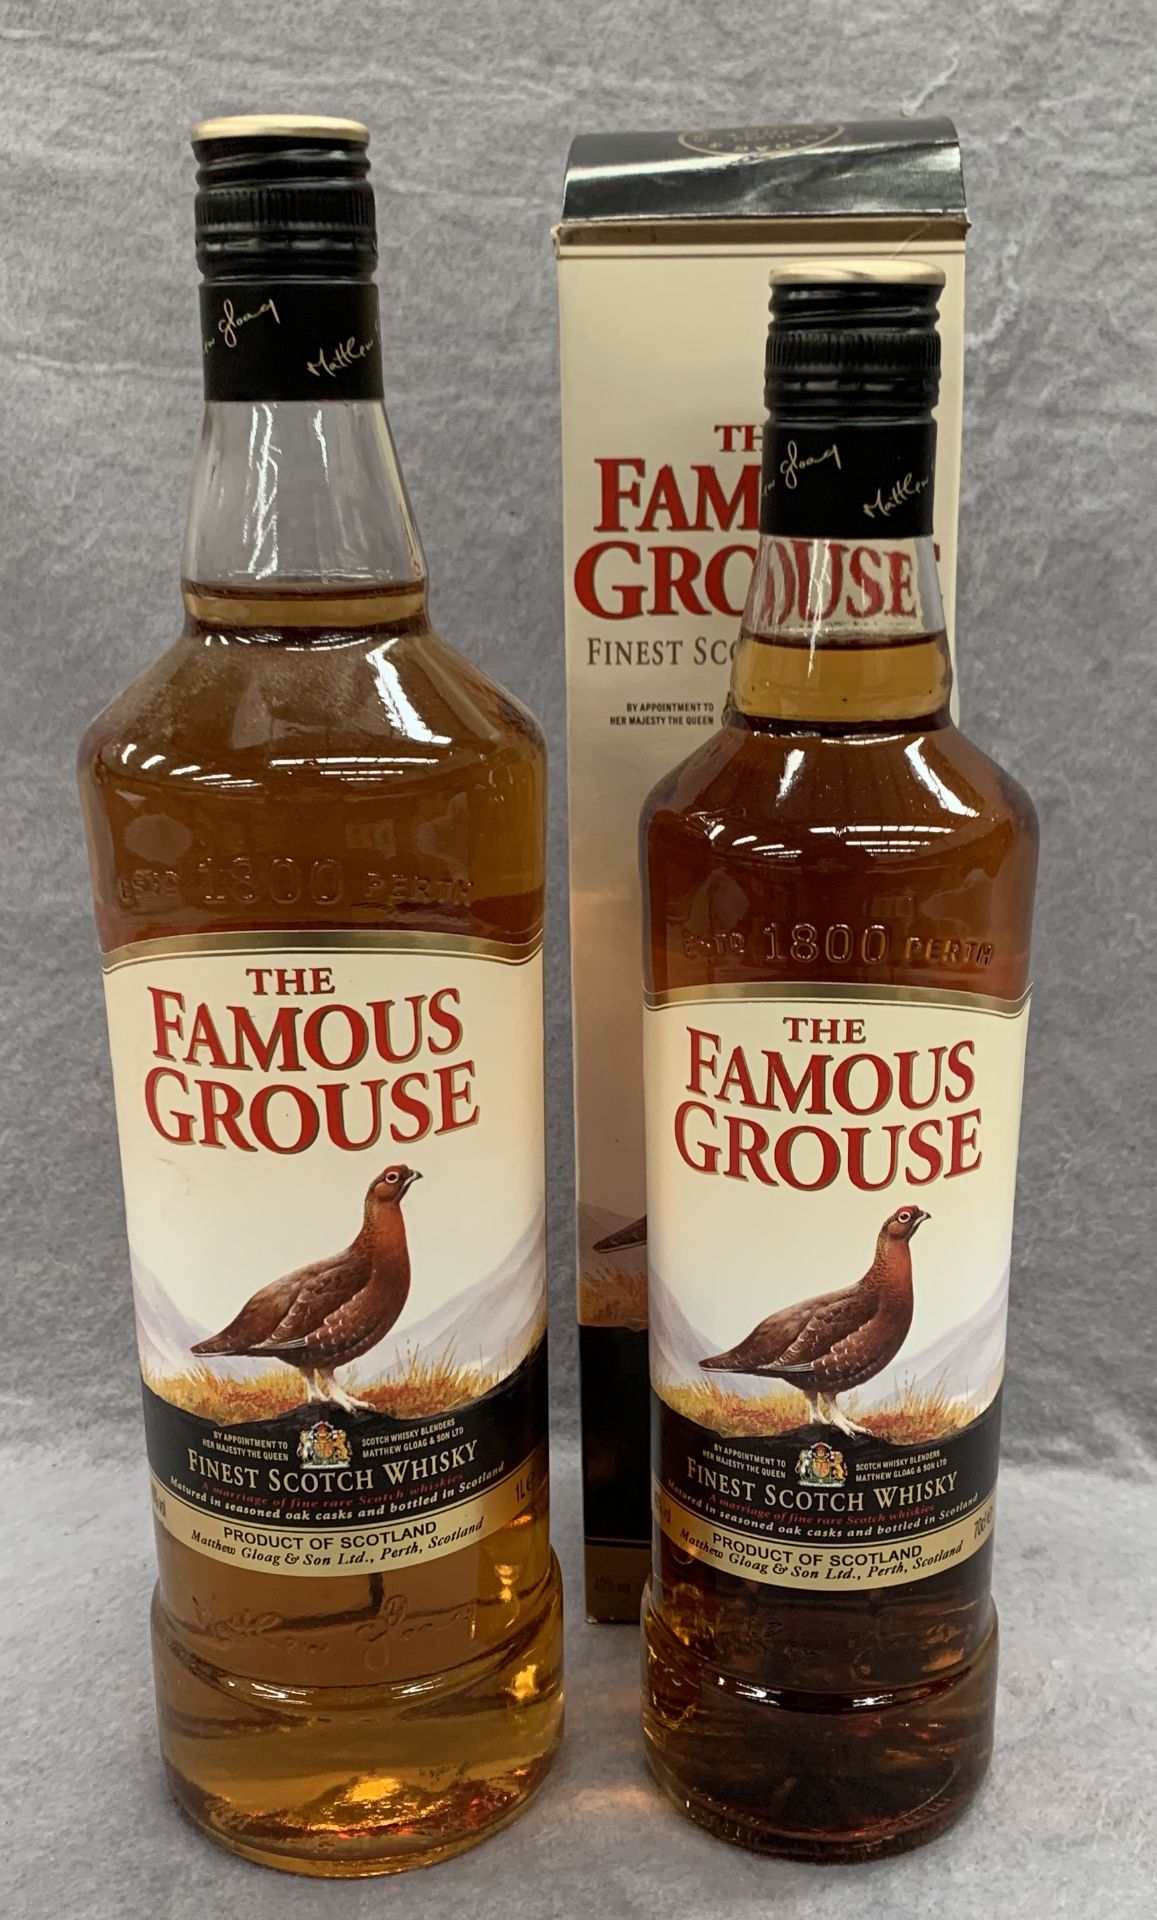 A 1 litre bottle of Famous Grouse Finest Scotch Whisky and a 75cl bottle of Famous Grouse Finest